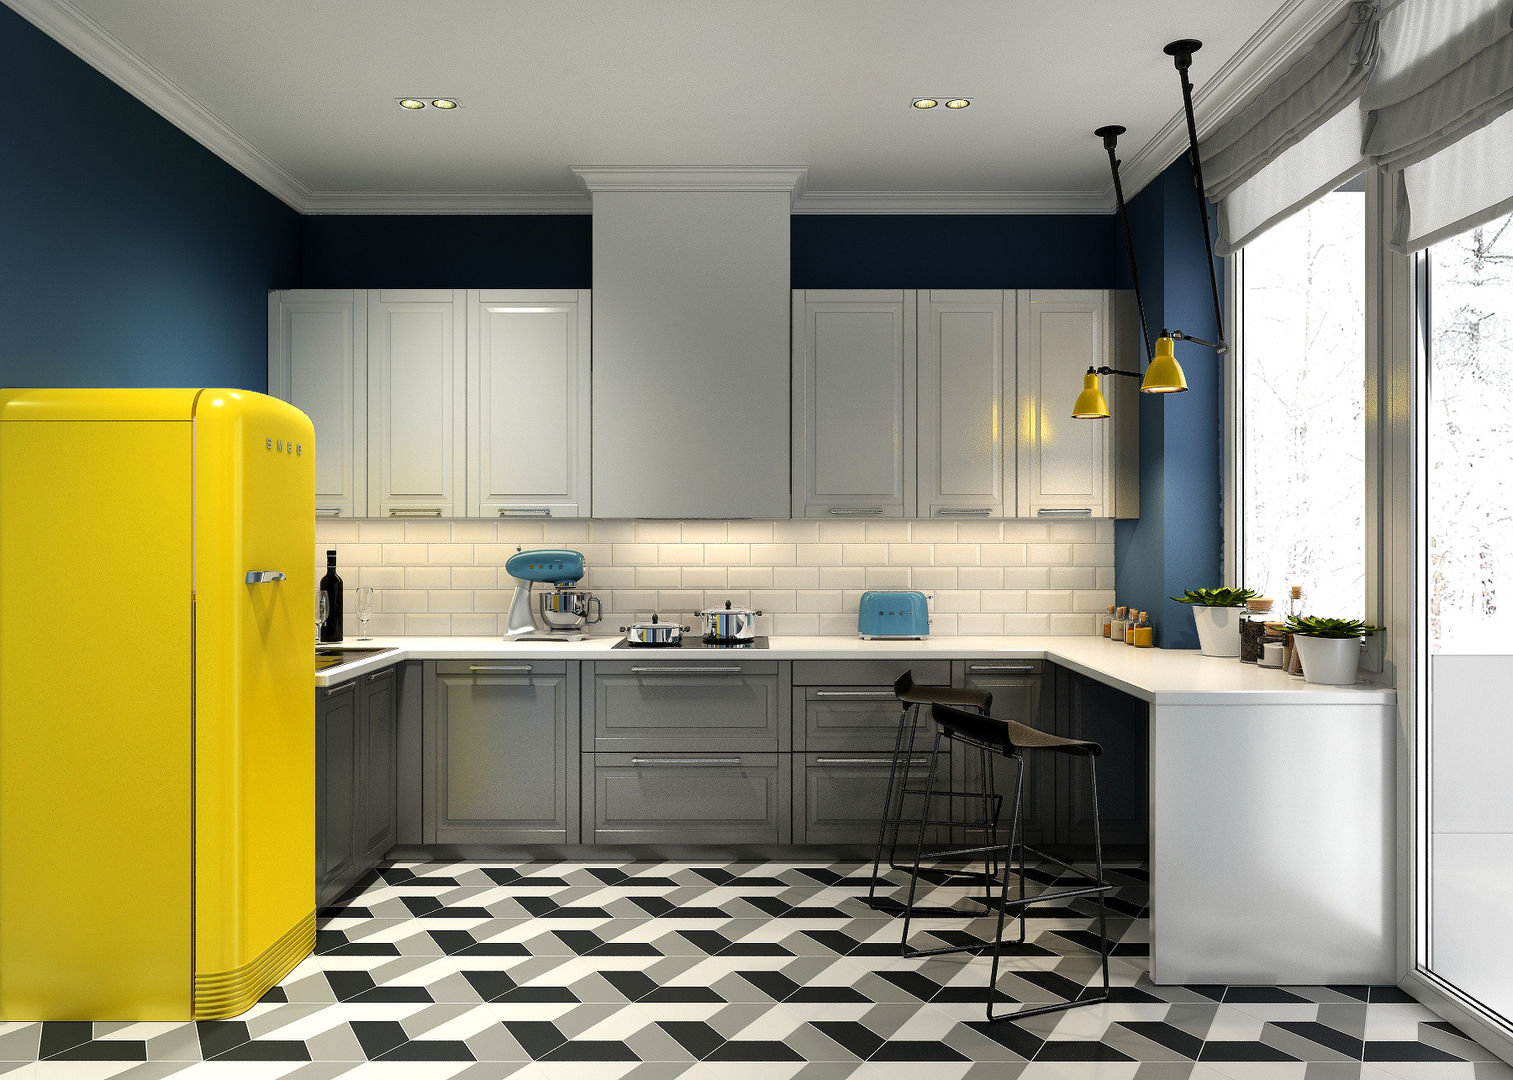 Трехкомнатная квартира для молодой семьи в современном стиле с элементами поп-арта, Studio 25 Studio 25 Scandinavian style kitchen